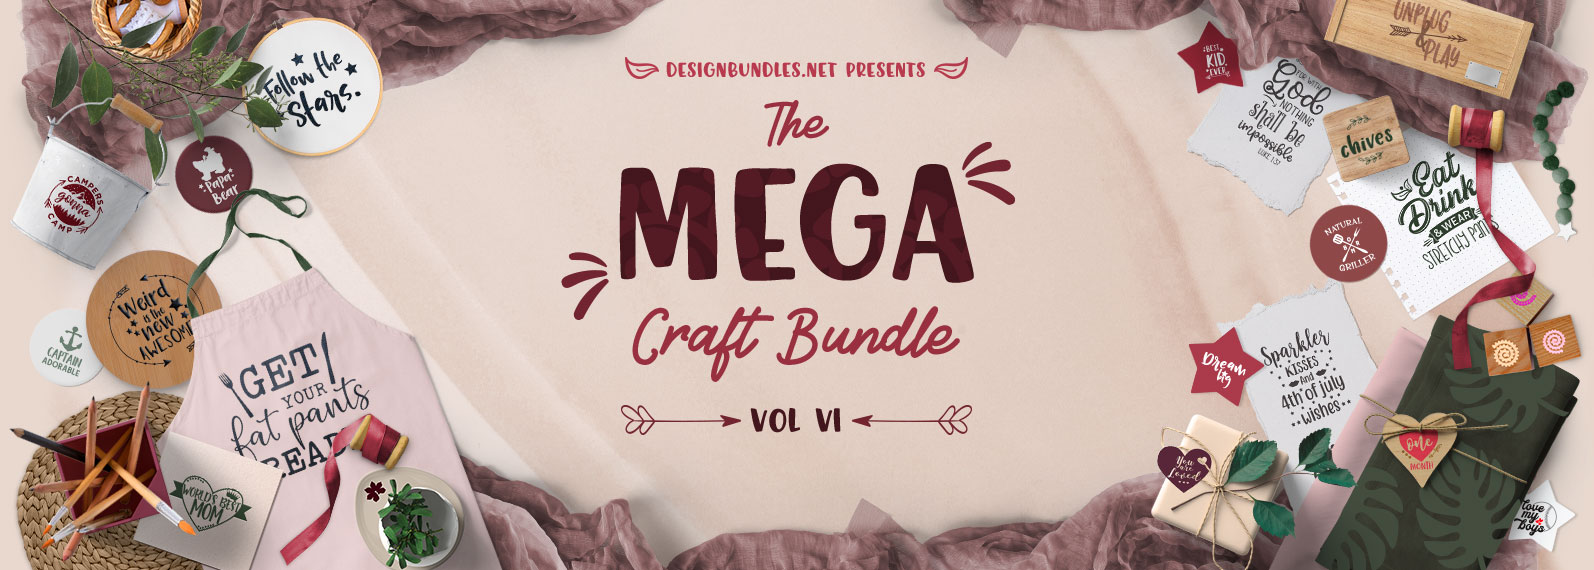 Download The Mega Craft Bundle VI | Design Bundles